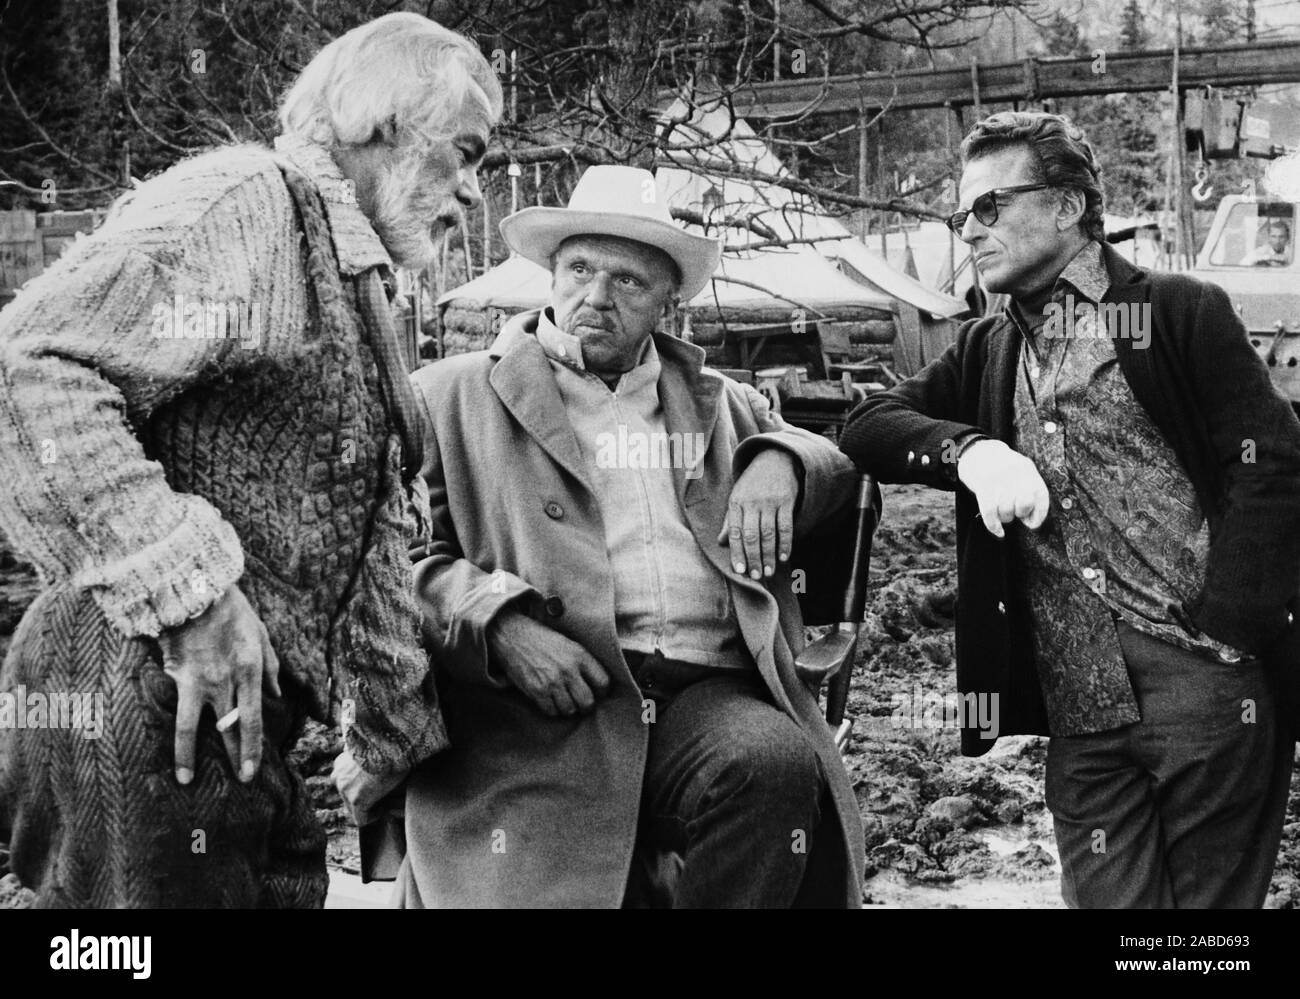 Pinte el vagón, desde la izquierda: Lee Marvin, director Joshua Logan, guionista y letrista Alan Jay Lerner en conjunto, 1969 Foto de stock